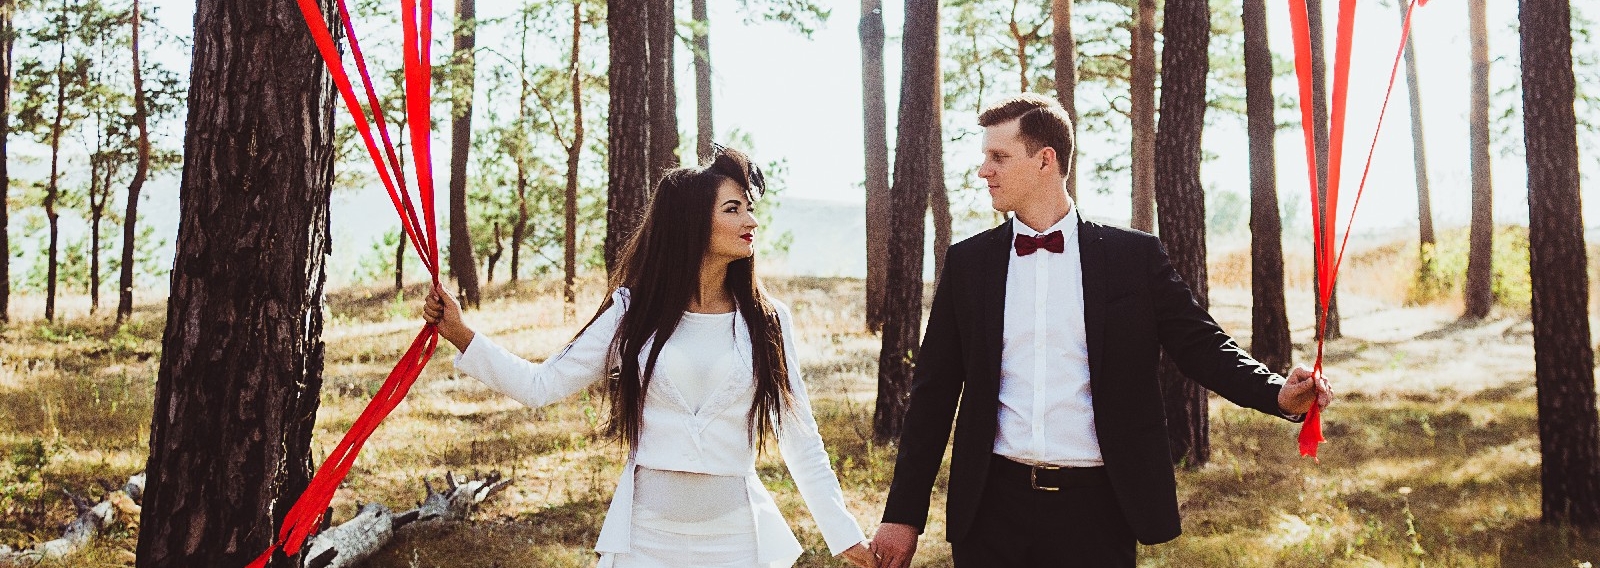 Осенняя свадьба Надежды и Сергея: белый фрак вместо свадебного платья